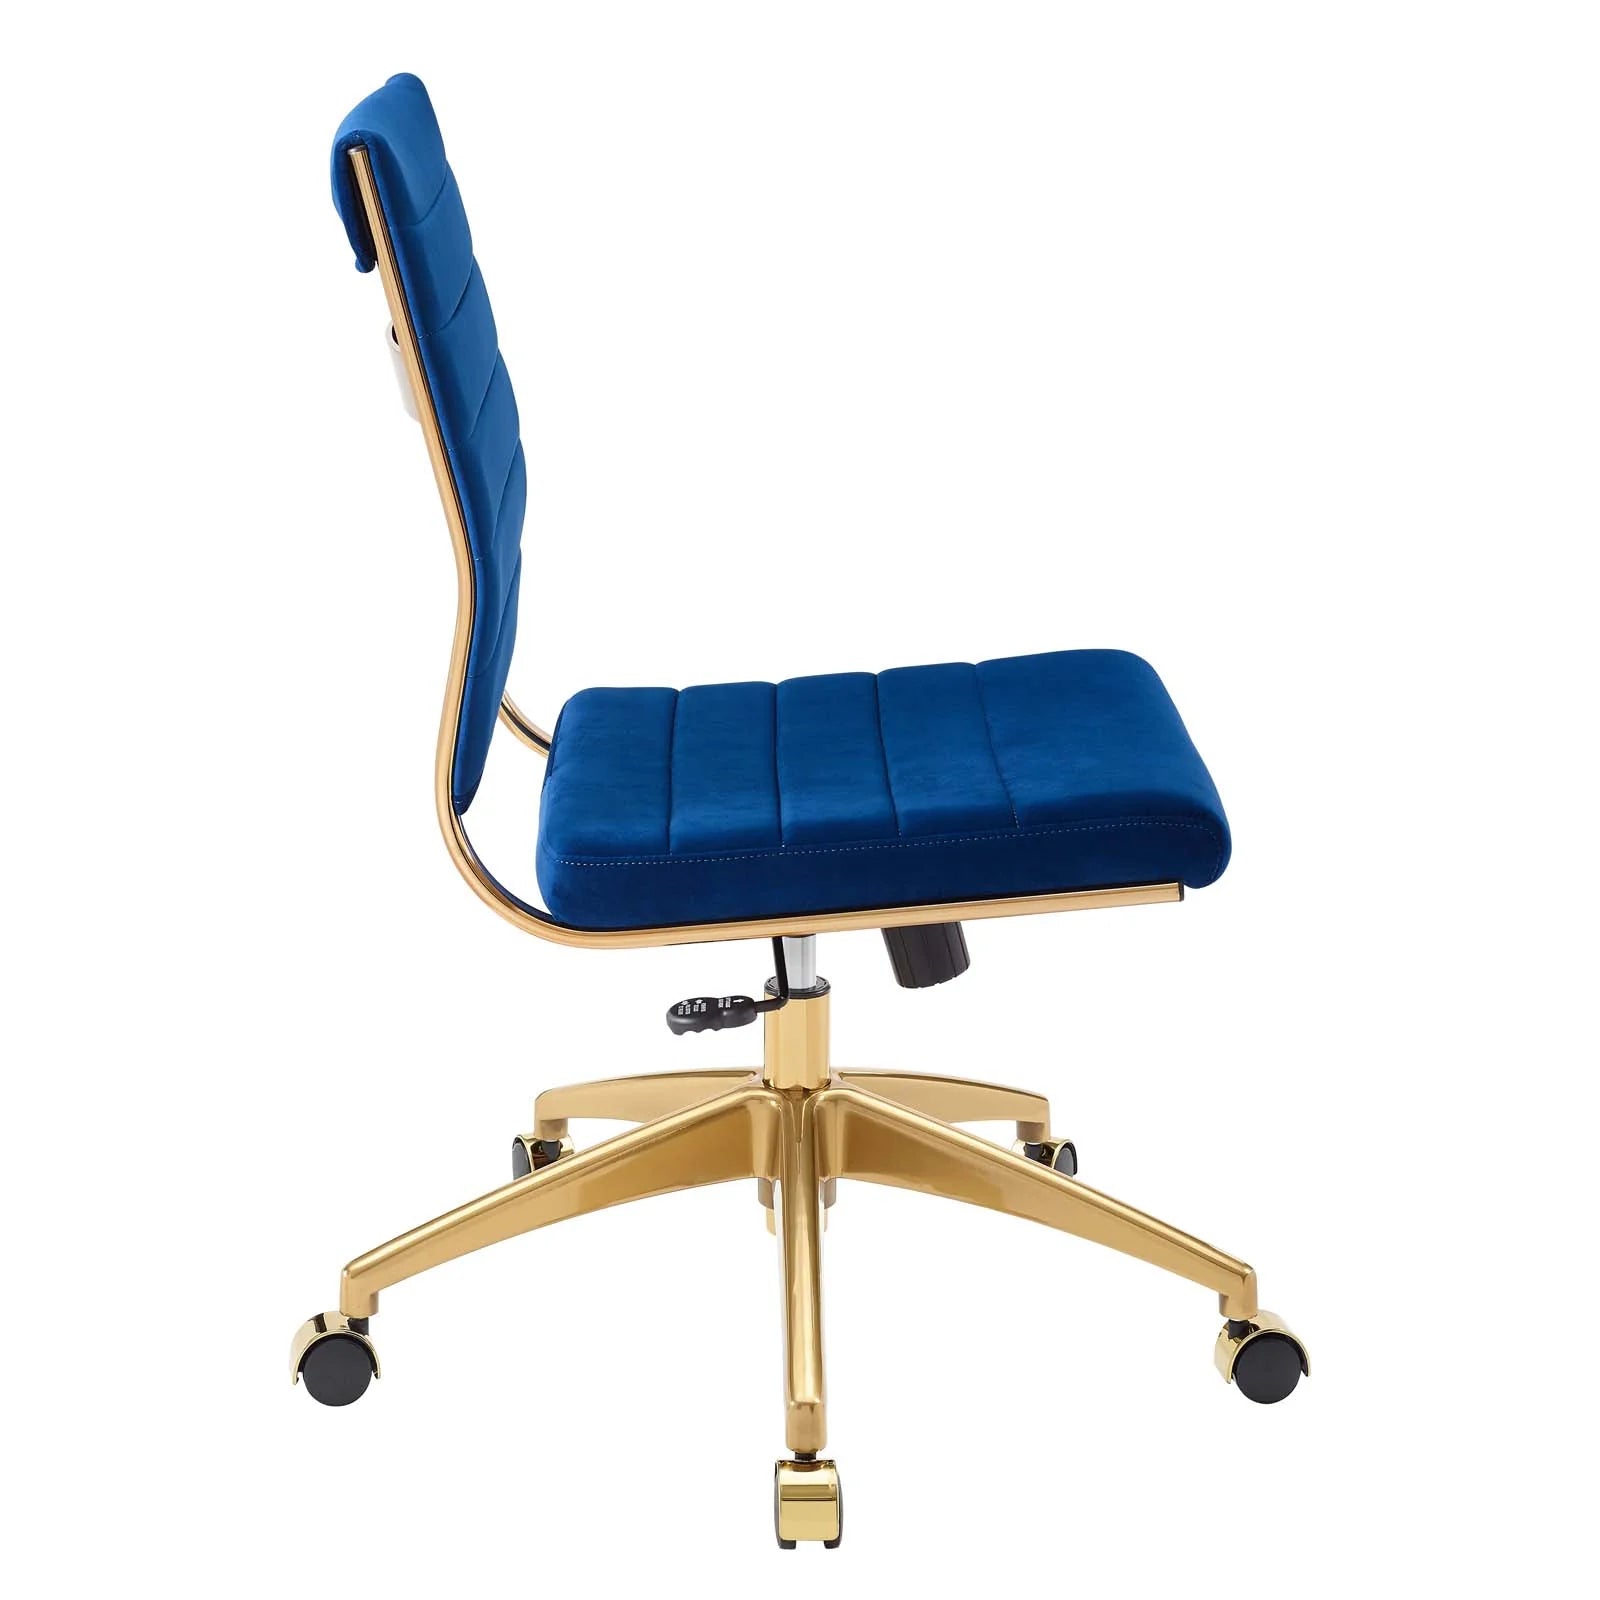 Silla para escritorio moderna sin descansabrazos azul con dorado Zoa de lado.